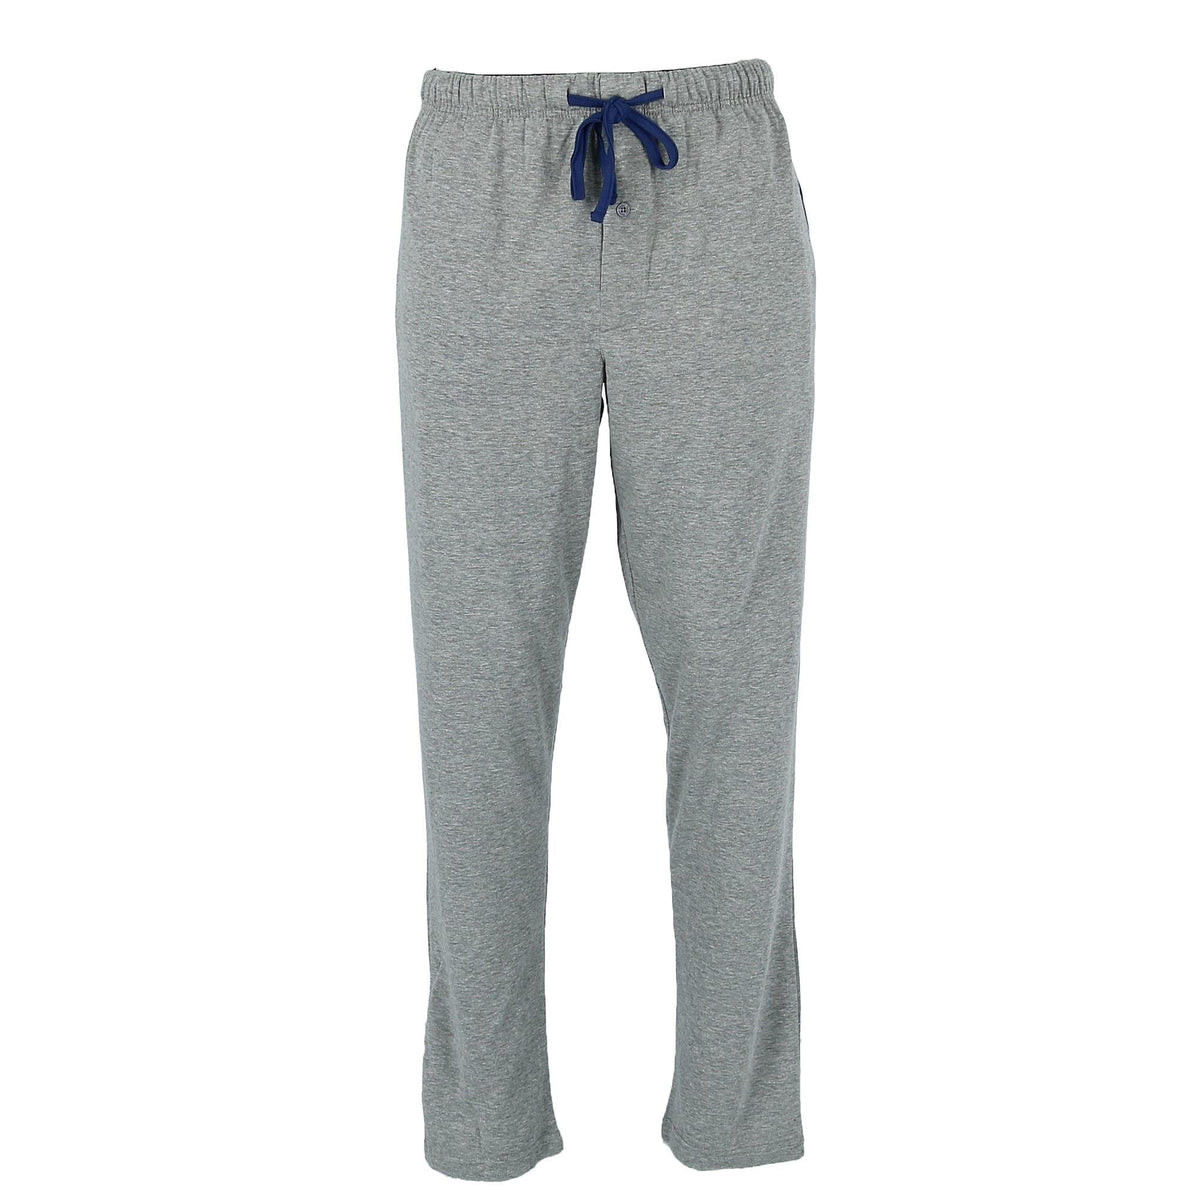 Men's X Temp Knit Lounge Pajama Pants by Hanes | Pajama Bottoms at ...